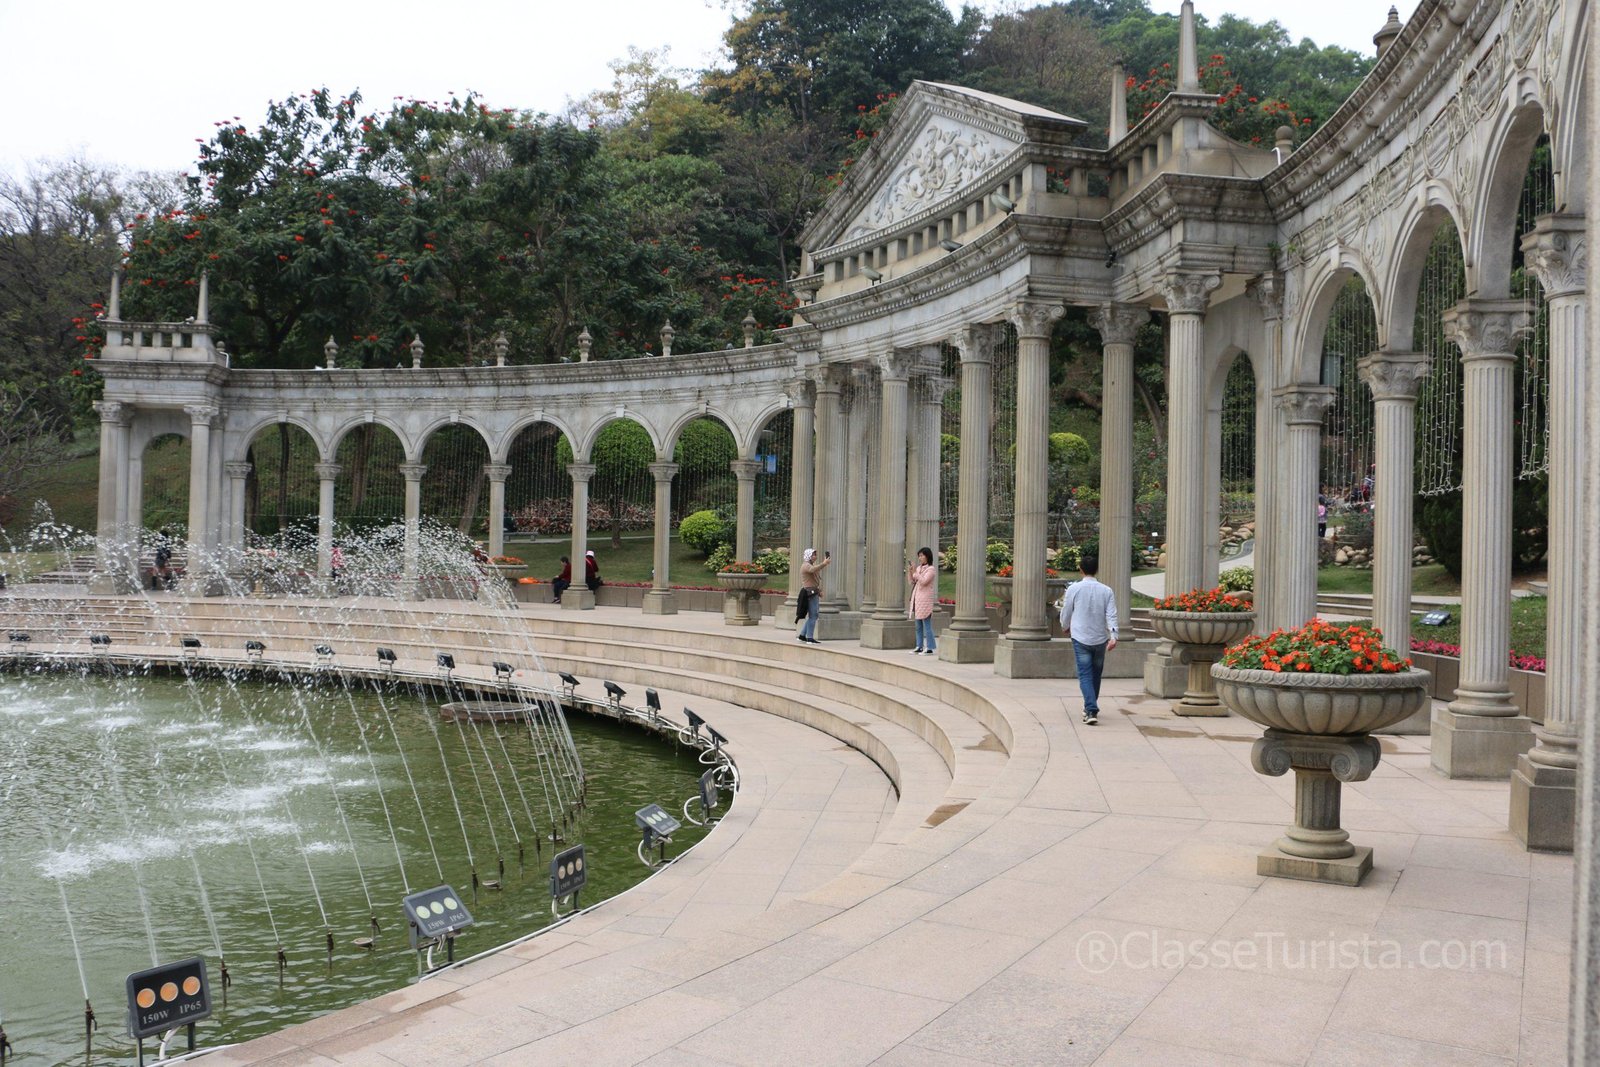 Roman Collonade, Yuntai Garden, Guangzhou